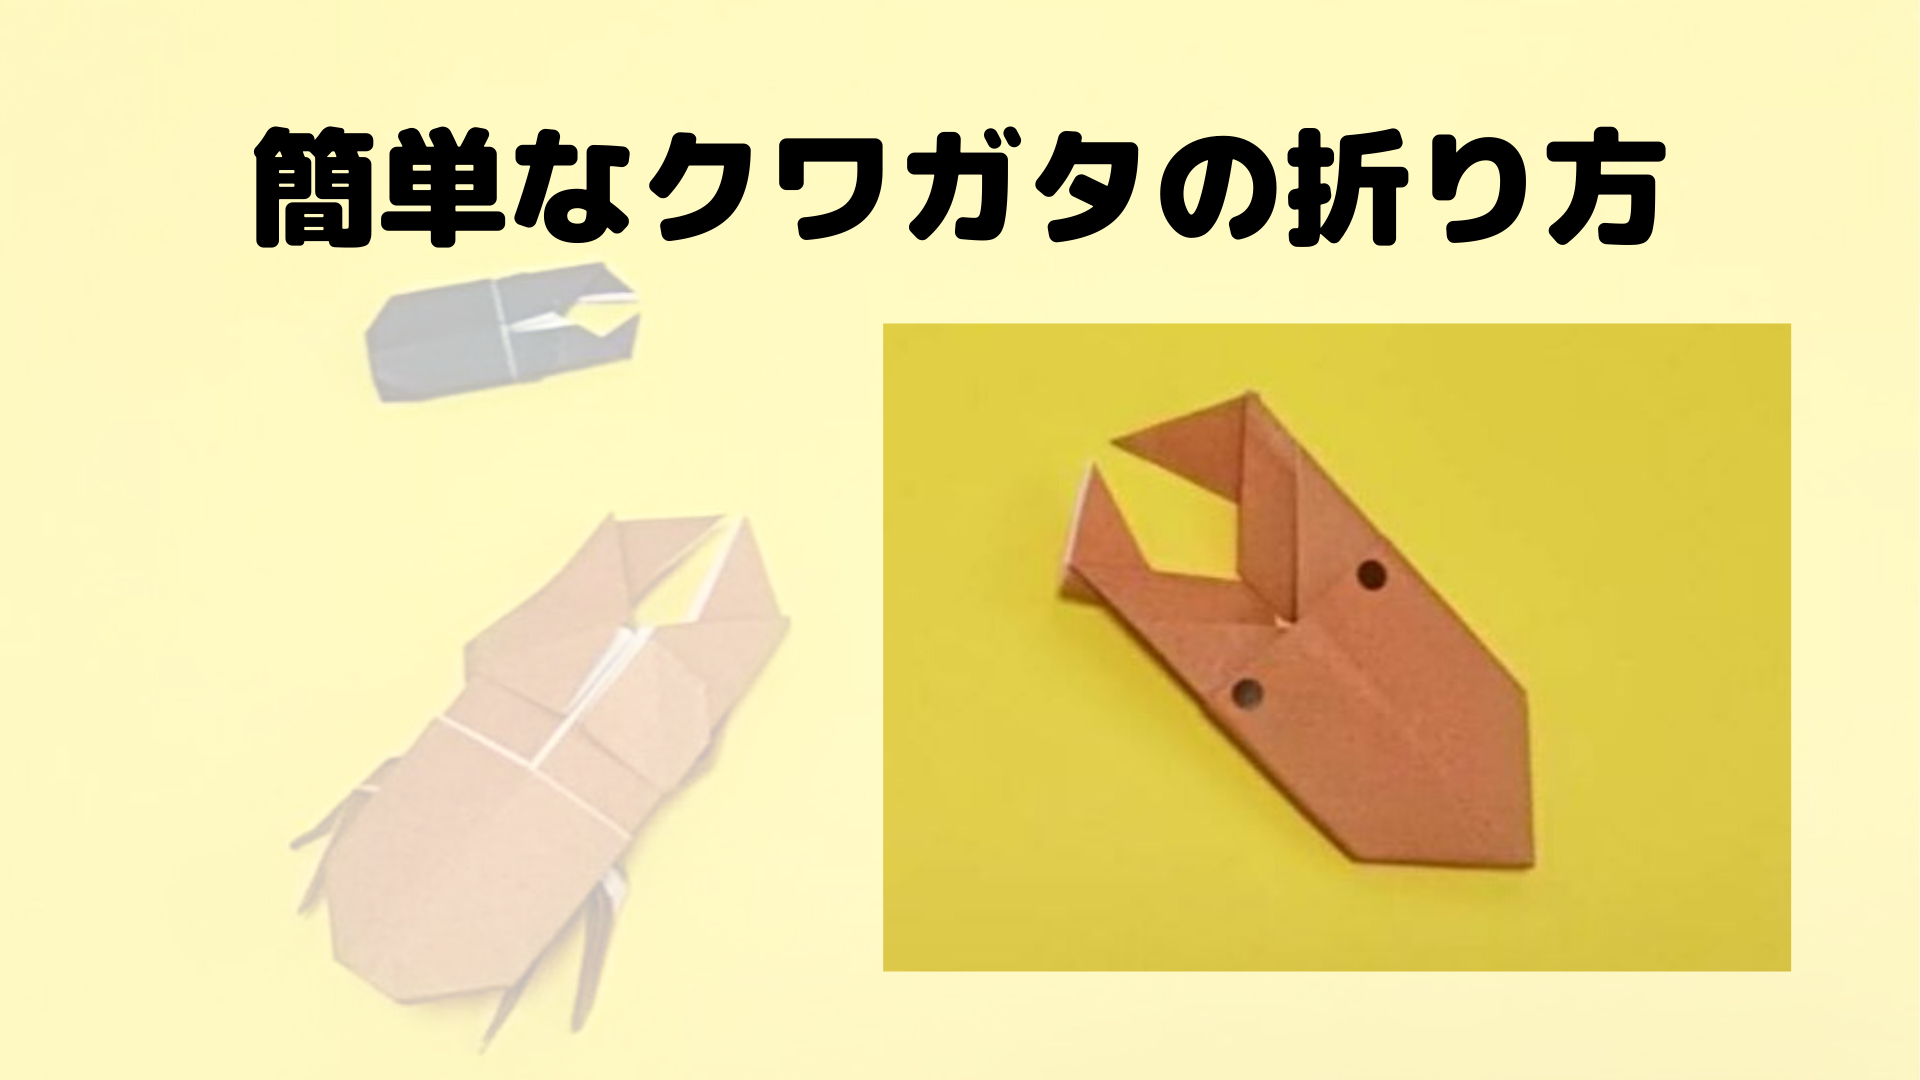 クワガタの折り紙 折り方が簡単で平面的にできてかわいい ちょちょいの工作部屋